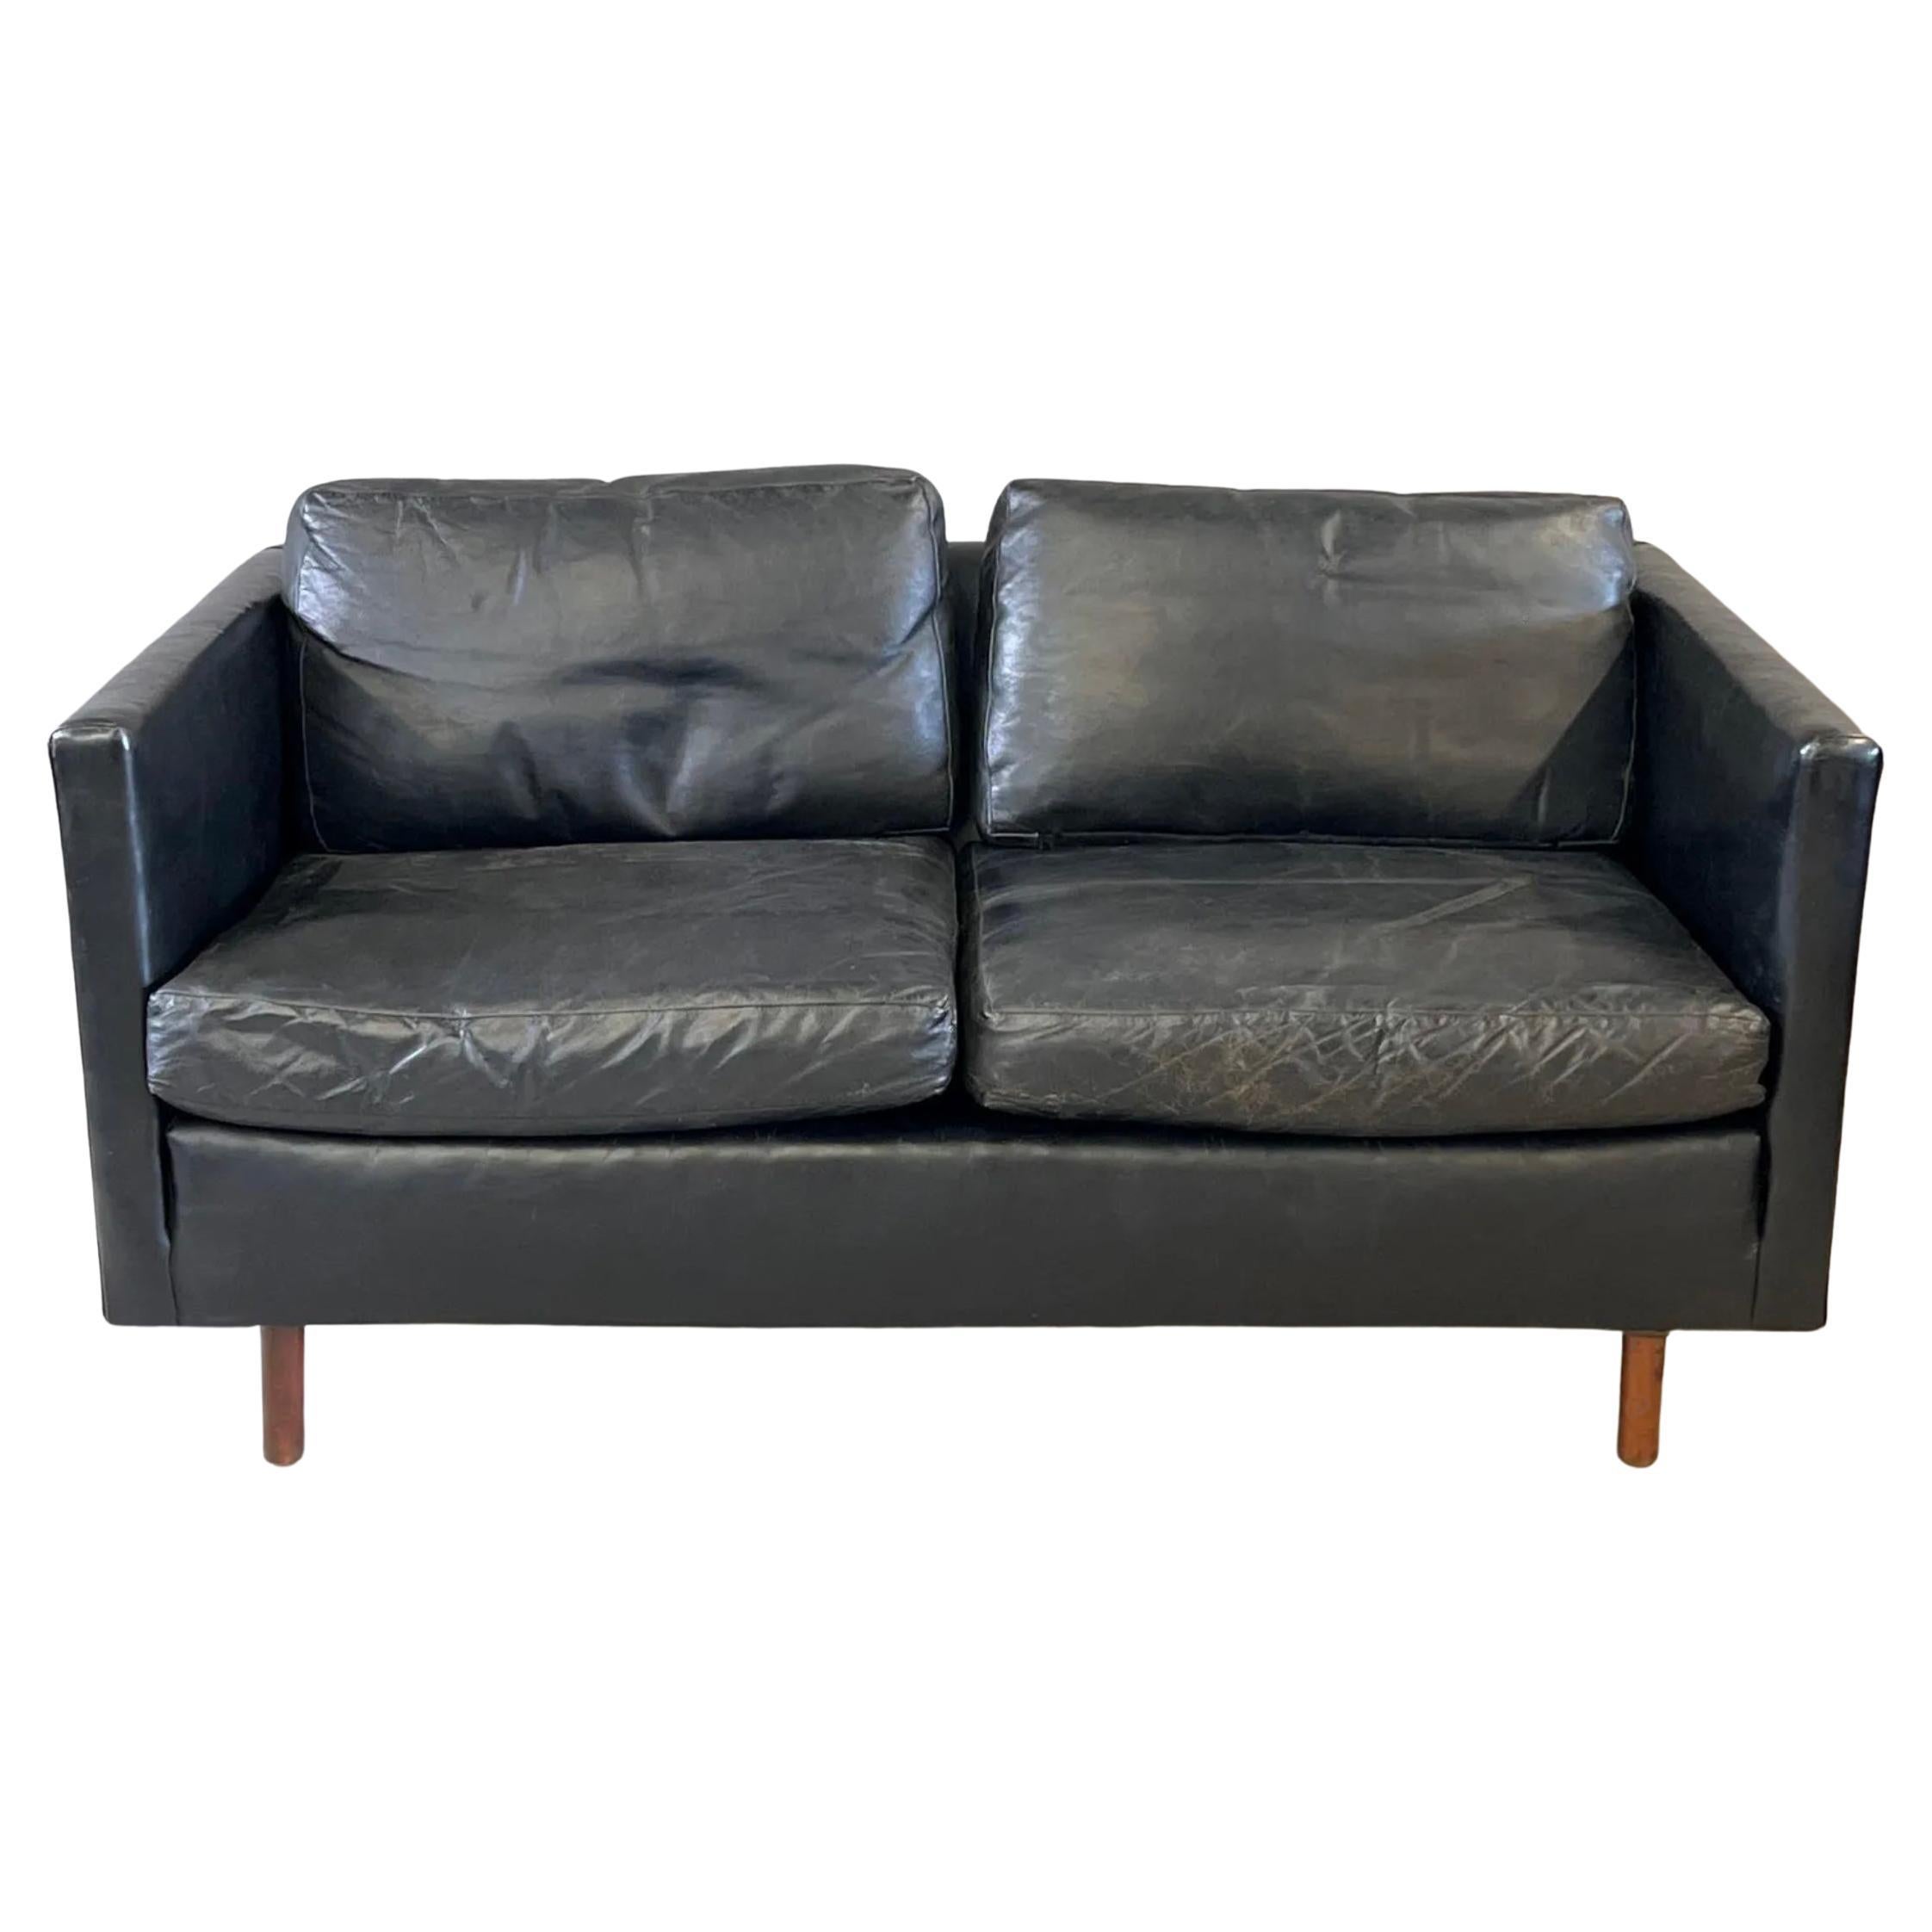 Modernes dänisches 2sitziges Sofa aus schwarzem Leder mit runden Beinen aus Teakholz